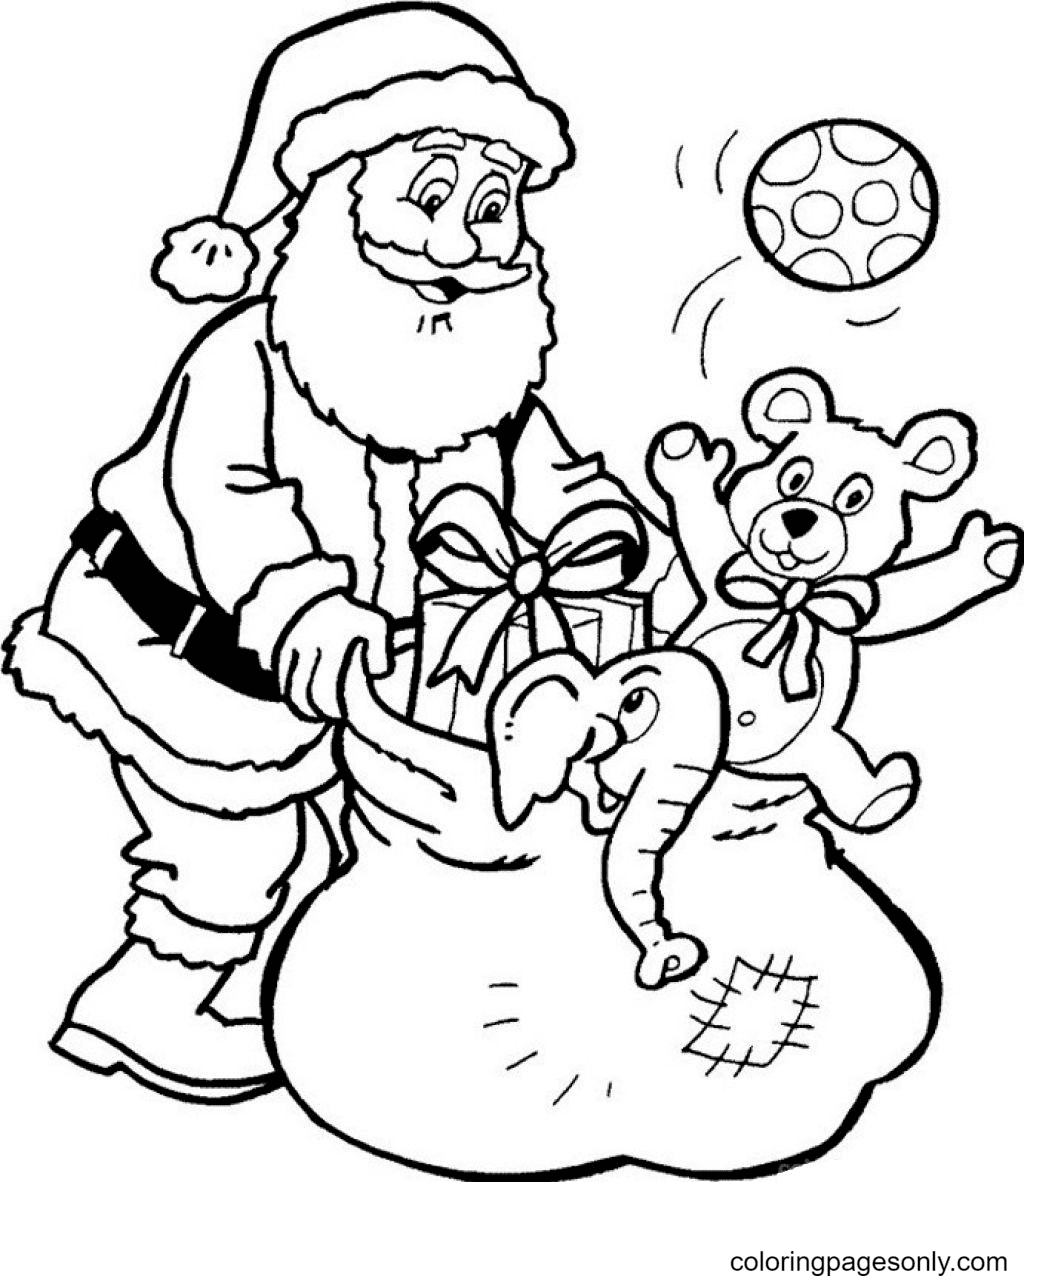 Der Weihnachtsmann sammelt die Spielsachen vom Weihnachtsmann